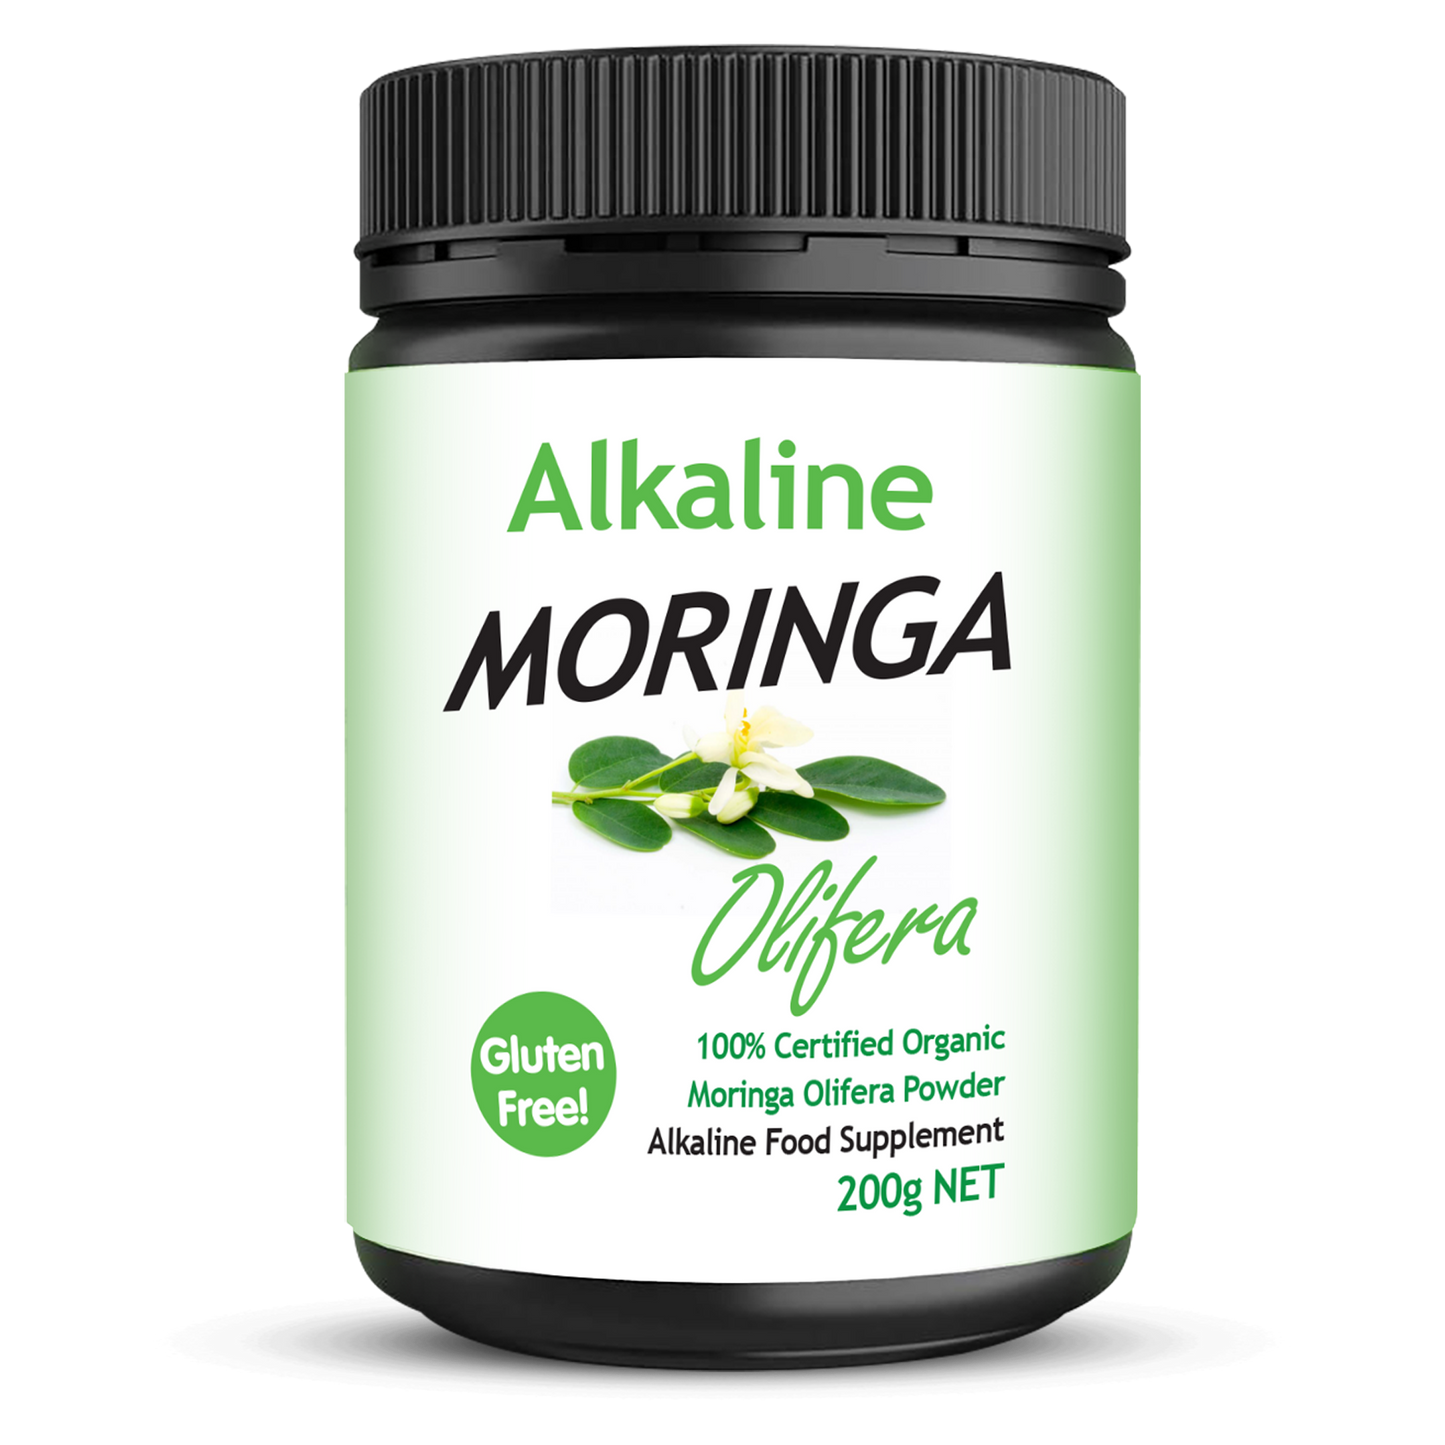 Alkaline Moringa Powder